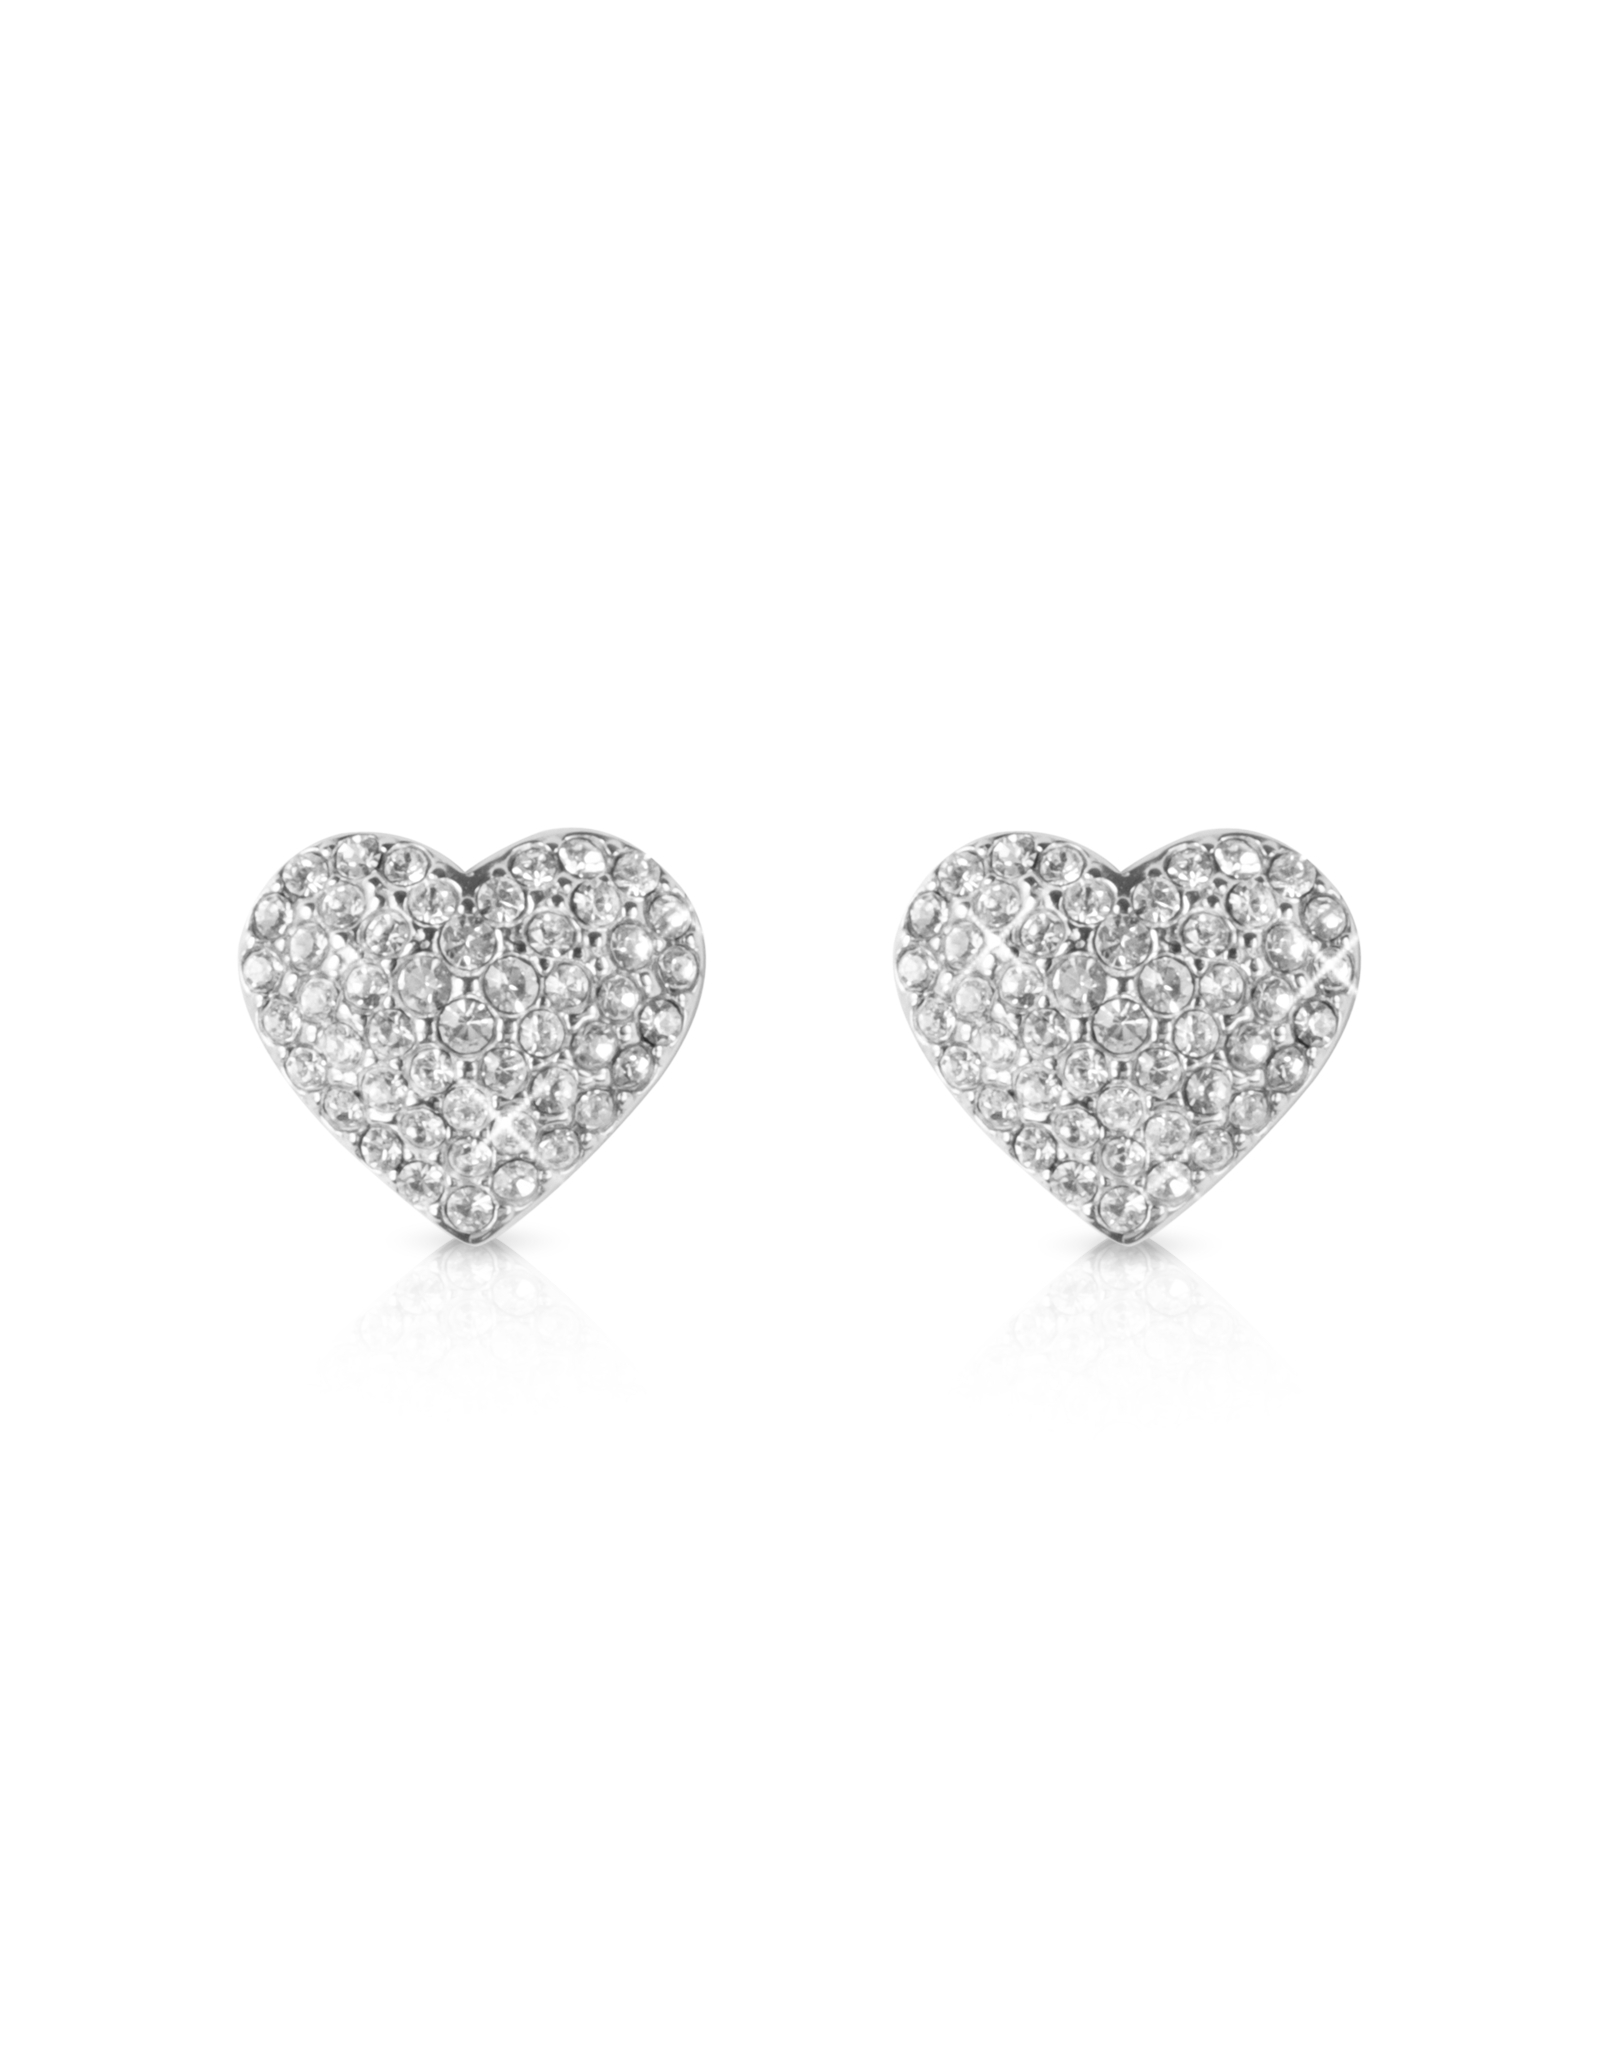 Lyst - Michael Kors Pave Heart Earrings in Metallic